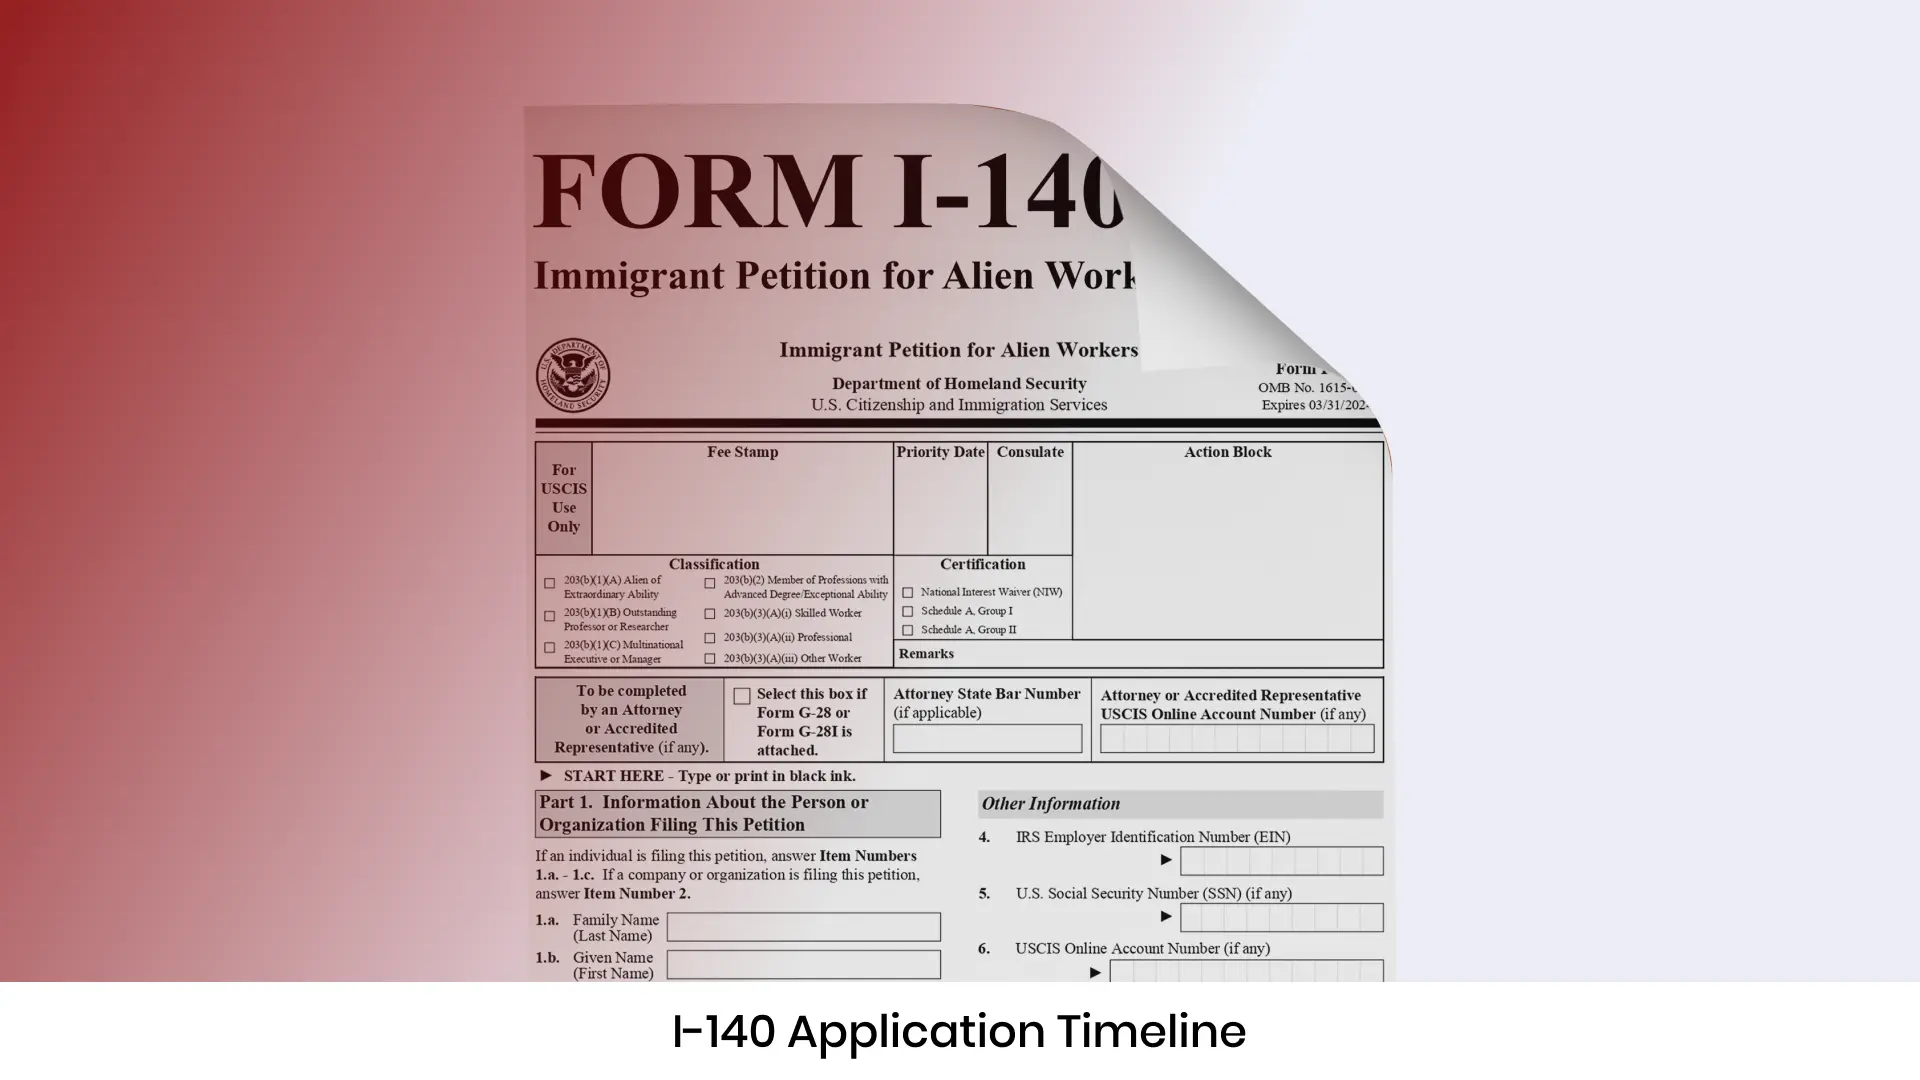 I-140 Application Timeline